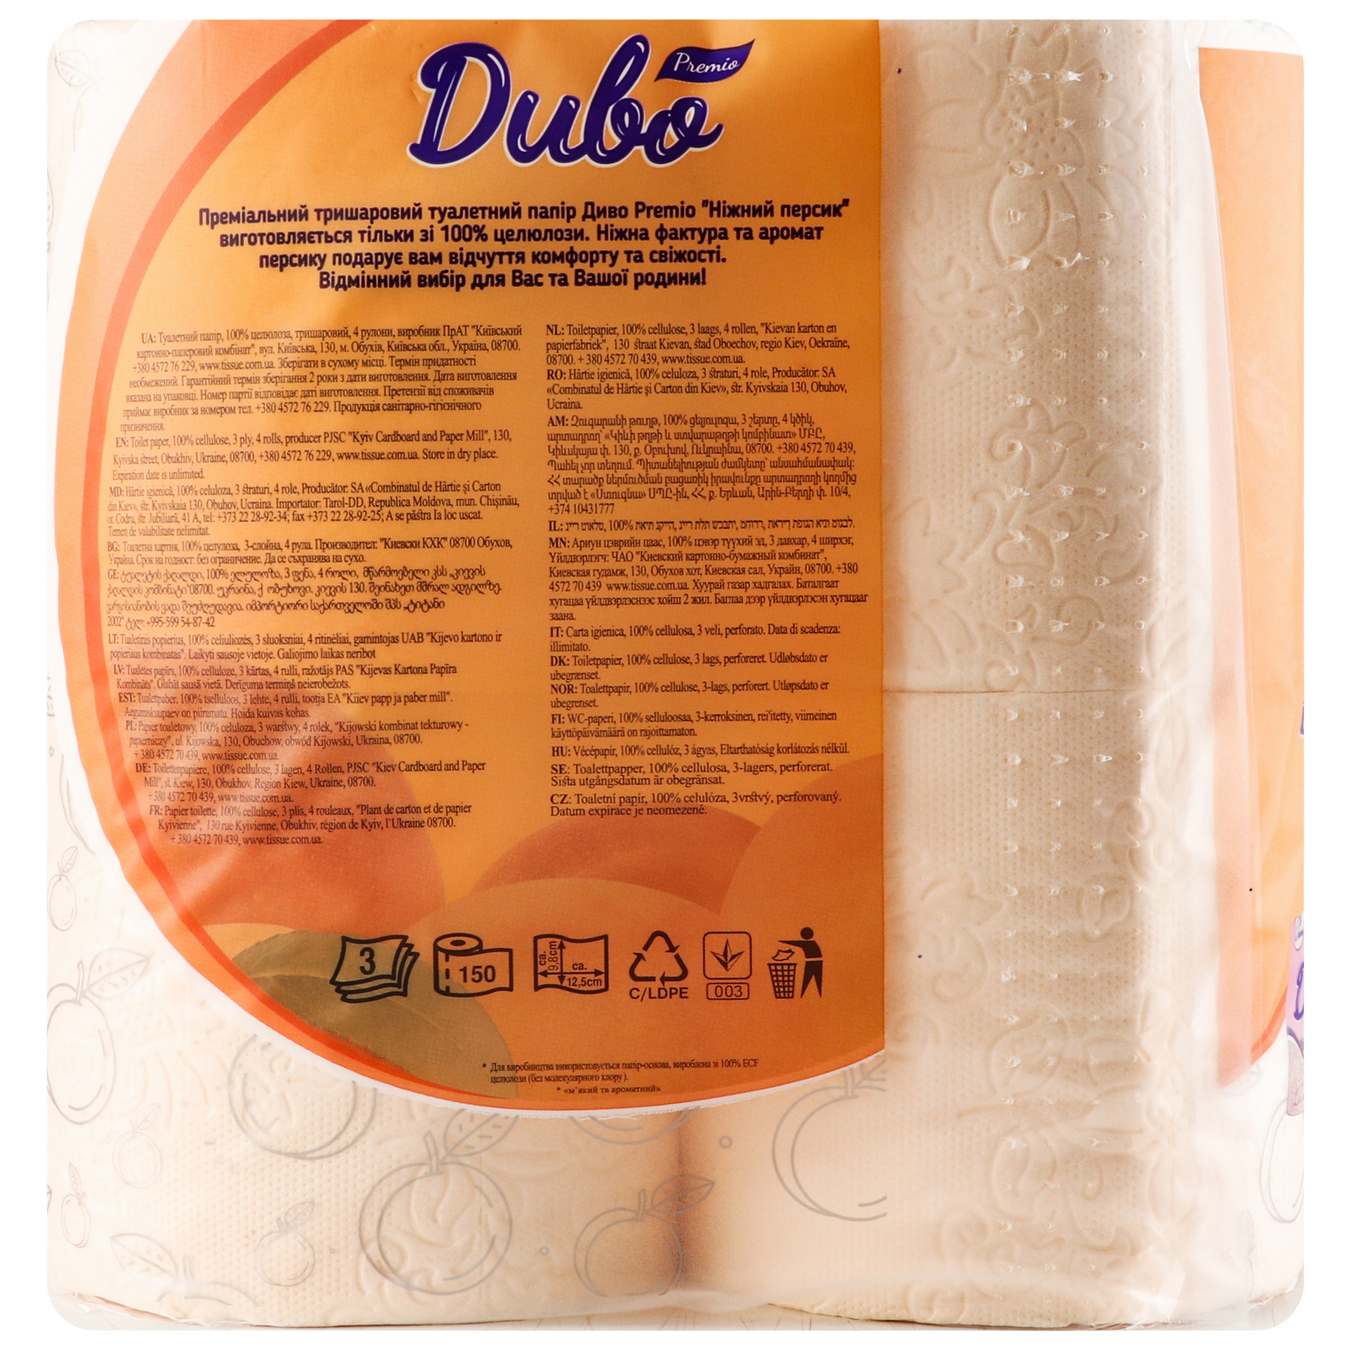 Туалетная бумага Чудо Premio целлюлозная 3-слойная персиковая 4рул 2